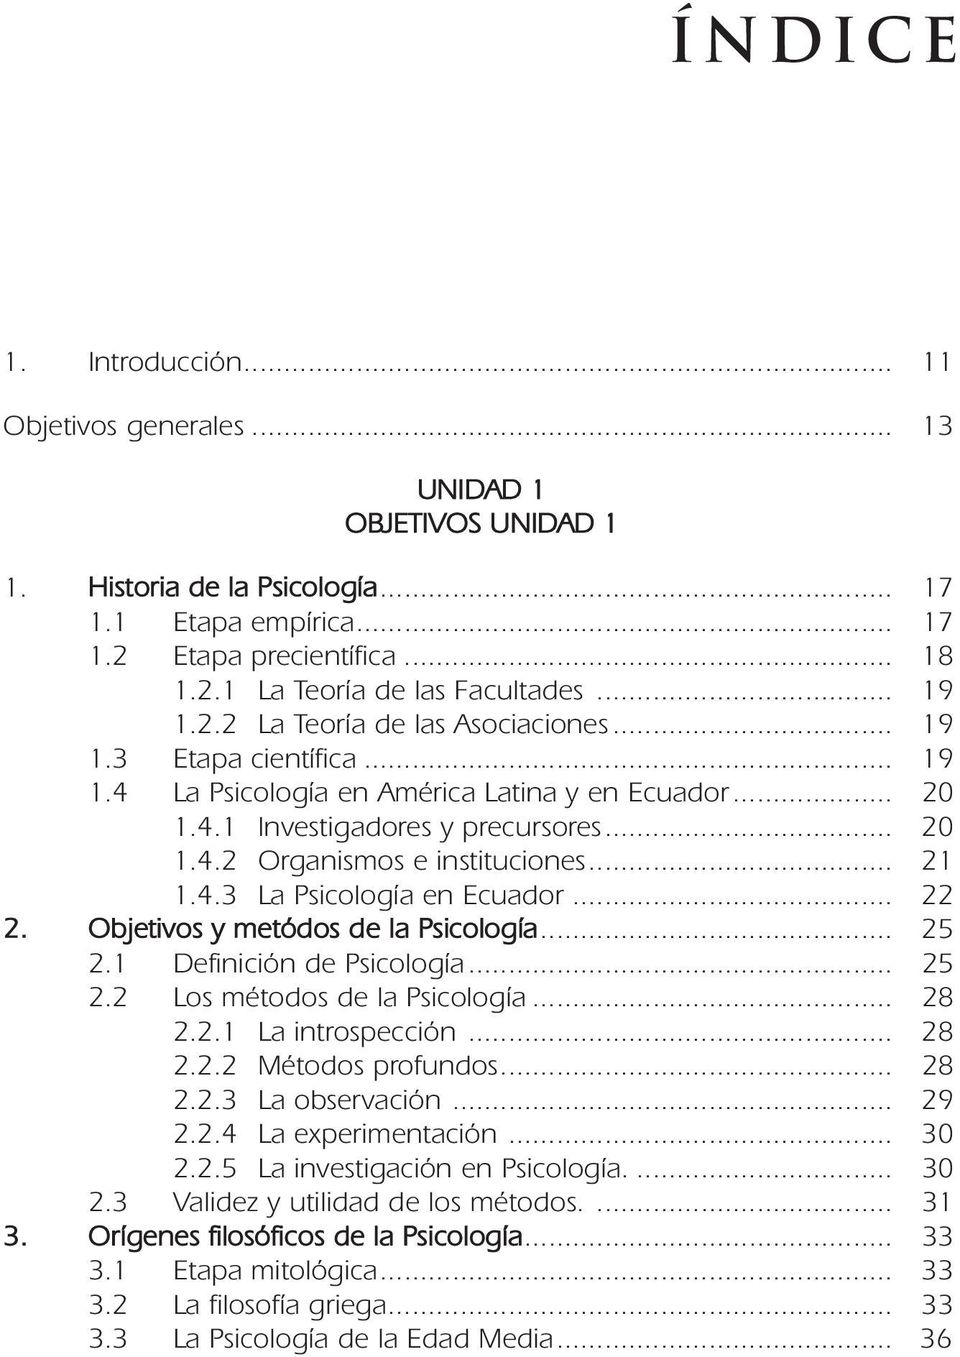 .. 21 1.4.3 La Psicología en Ecuador... 22 2. Objetivos y metódos de la Psicología... 25 2.1 Definición de Psicología... 25 2.2 Los métodos de la Psicología... 28 2.2.1 La introspección... 28 2.2.2 Métodos profundos.